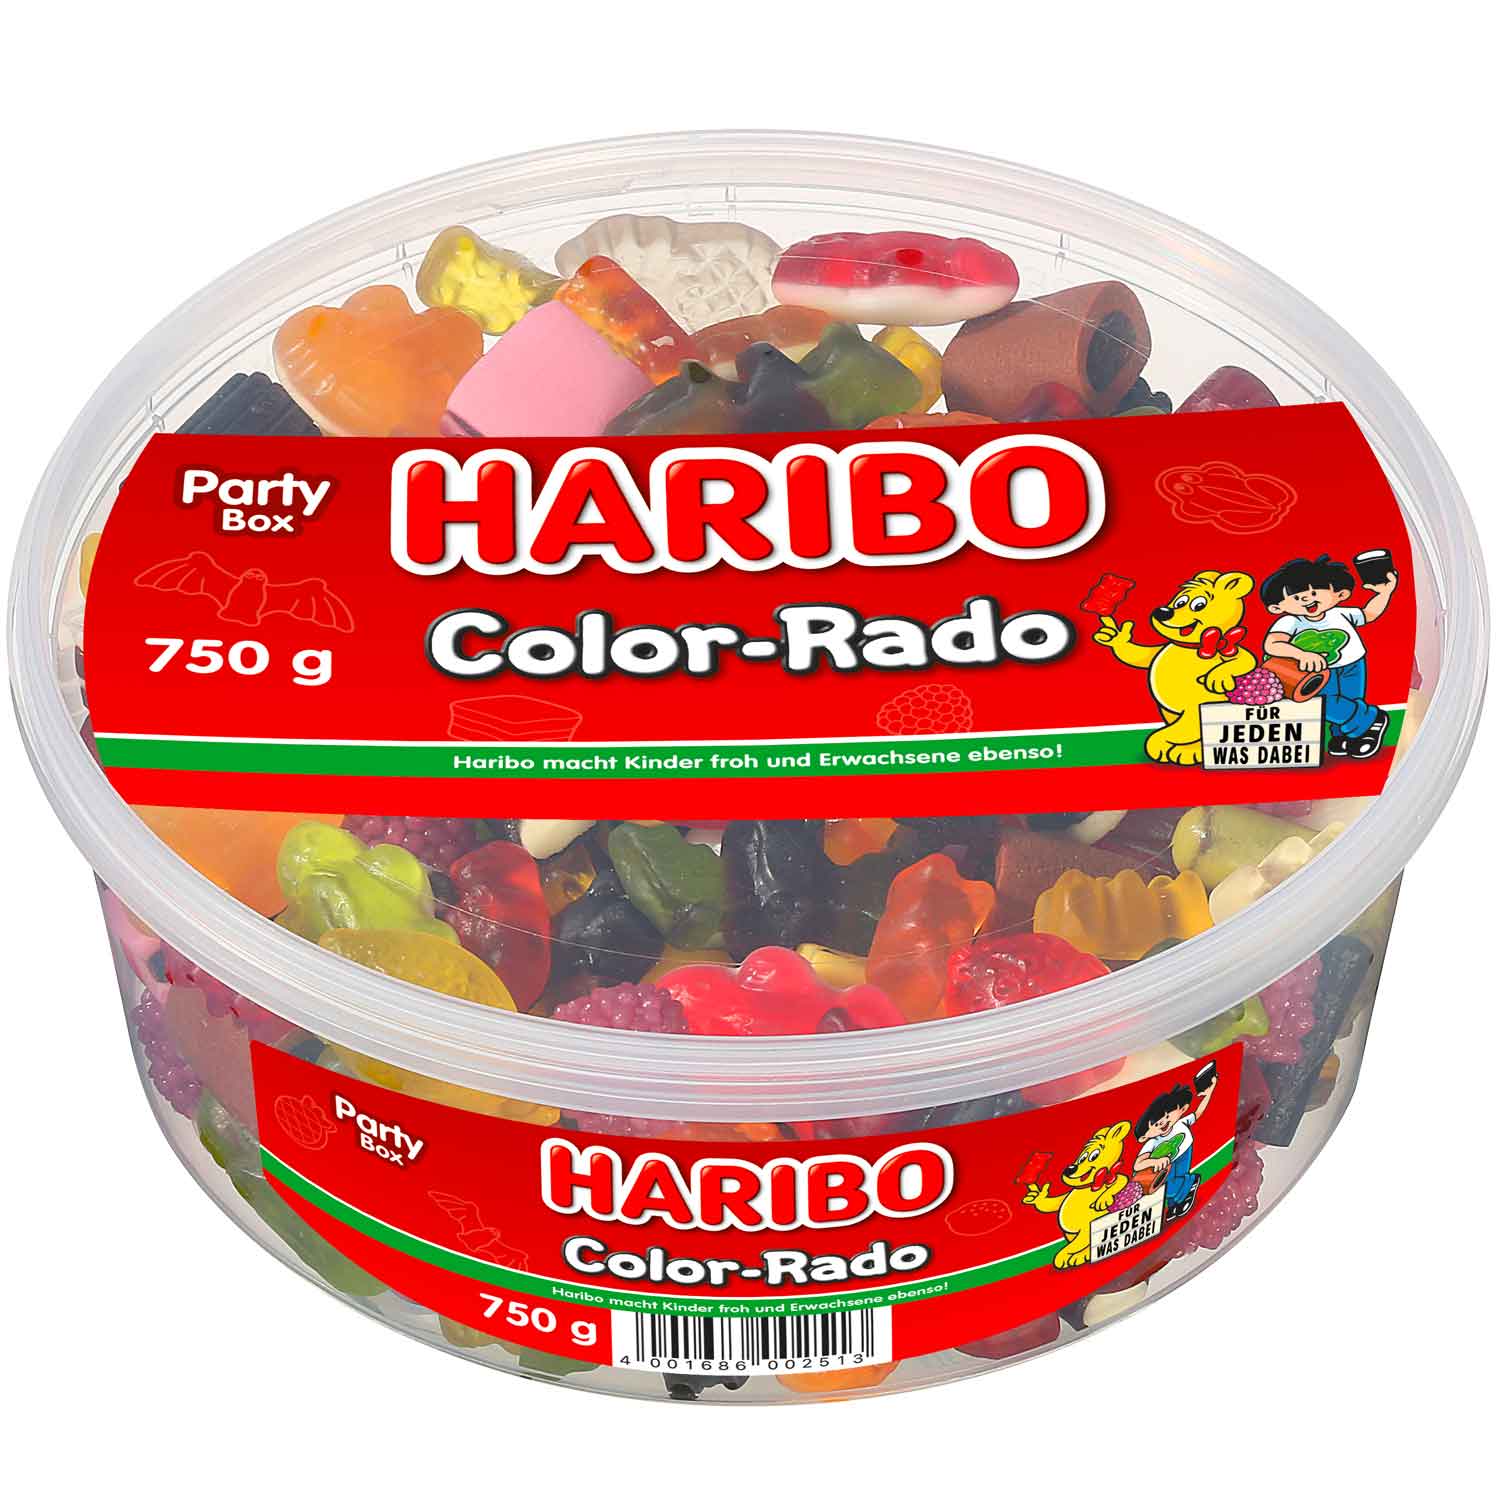 Haribo COLOR-RADO 750g - originál z Německa